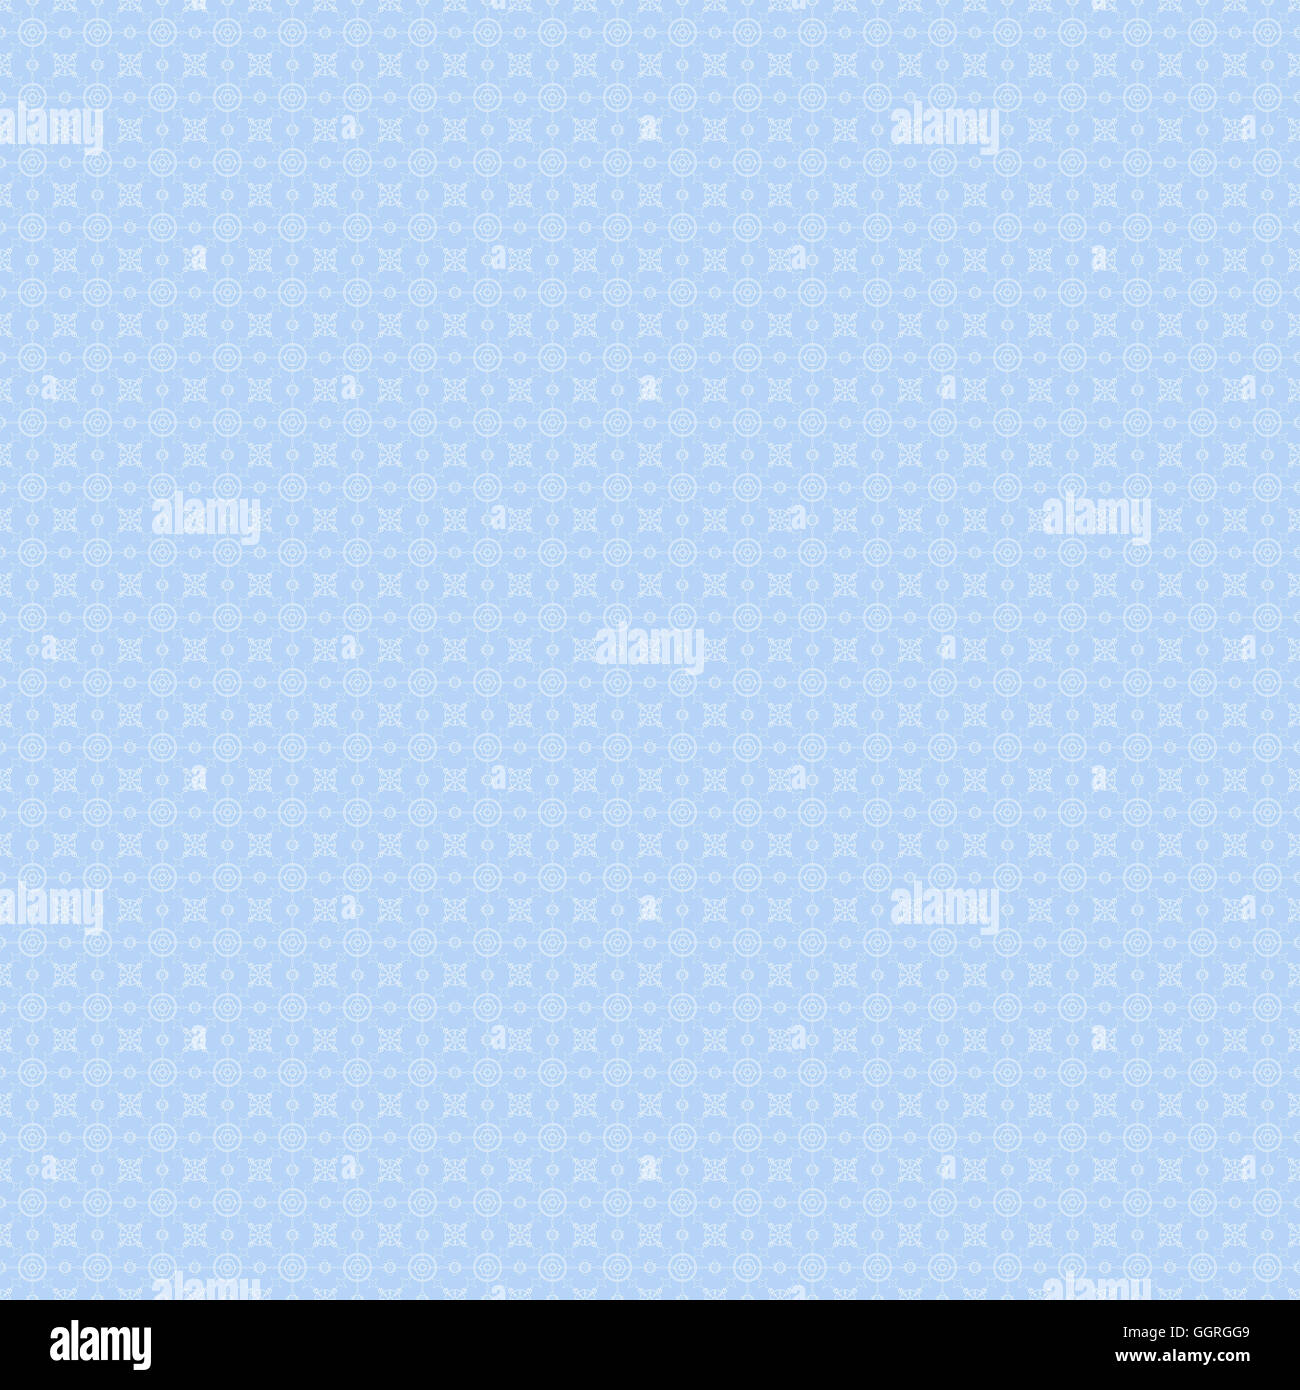 Weiße symmetrische Muster auf blau, Digital erstellt für die Verwendung als Web-Hintergrund Stockfoto